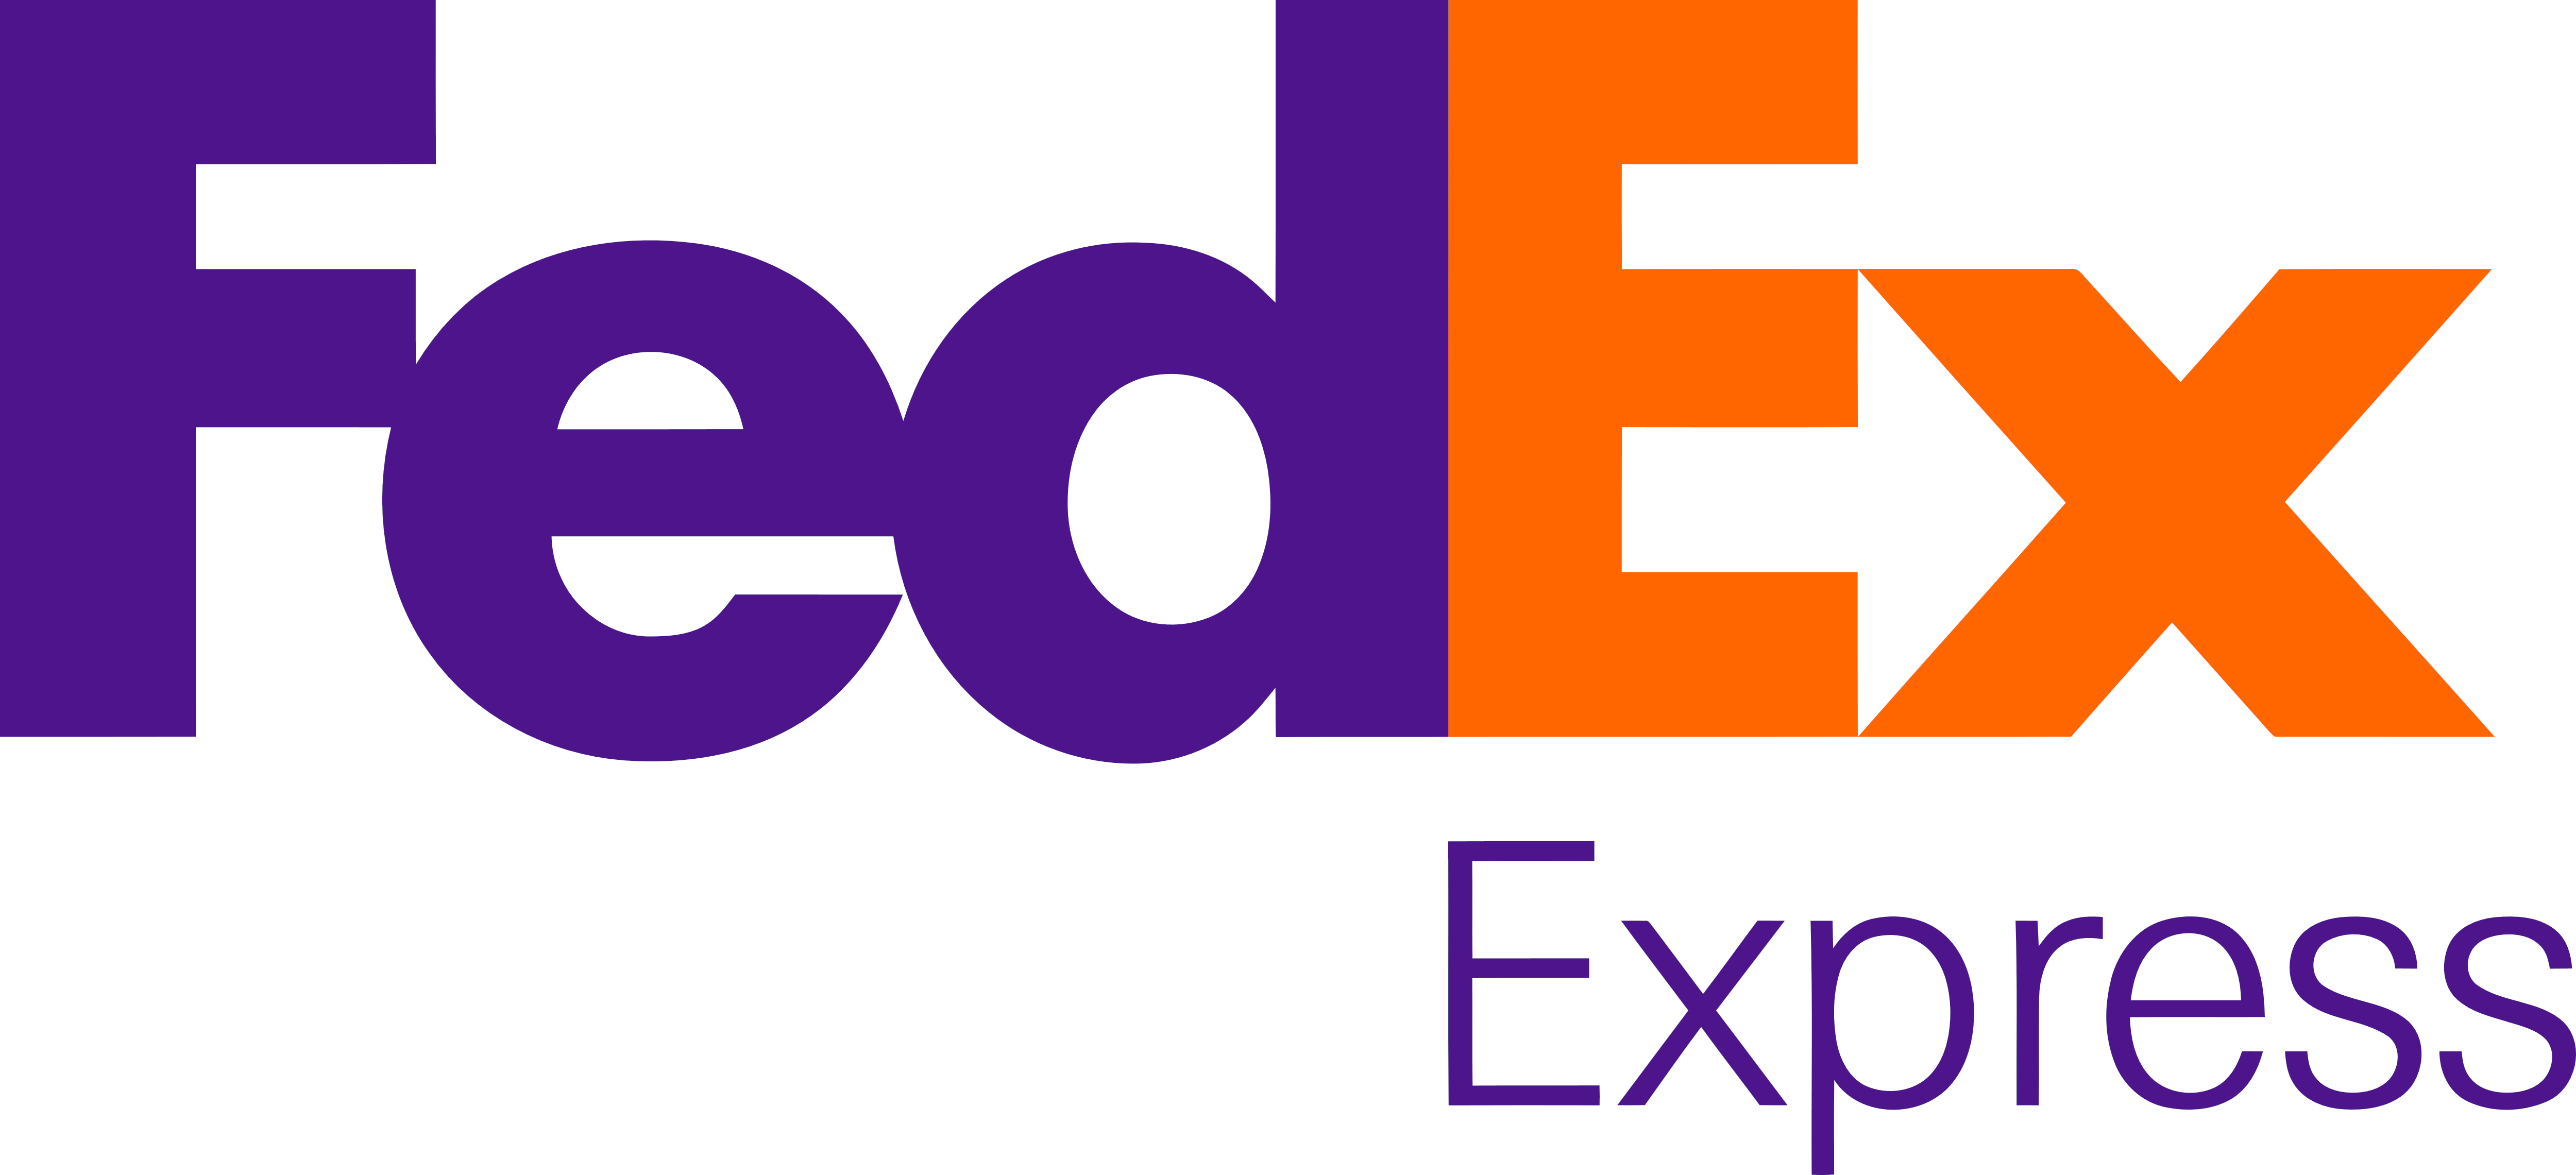 Logo Fedex Free Download Image PNG Image